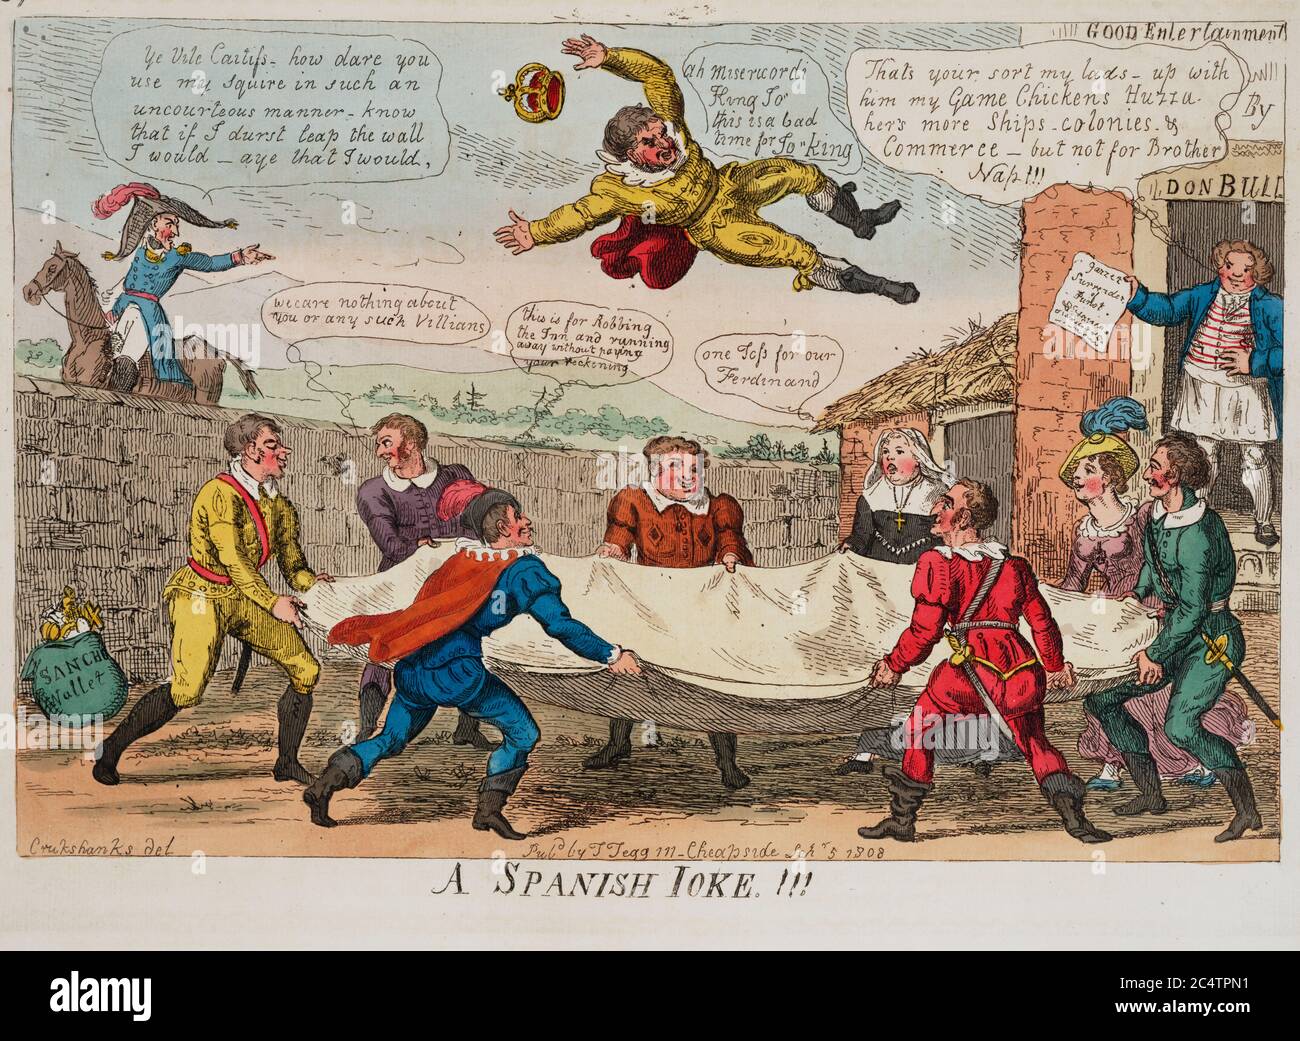 Ein spanischer Witz!!! - Drucken zeigt spanische Männer und Frauen, die König Joseph I. in die Luft werfen, als ein französischer Mann sich über seine Misshandlung beschwert. September 1808 Stockfoto